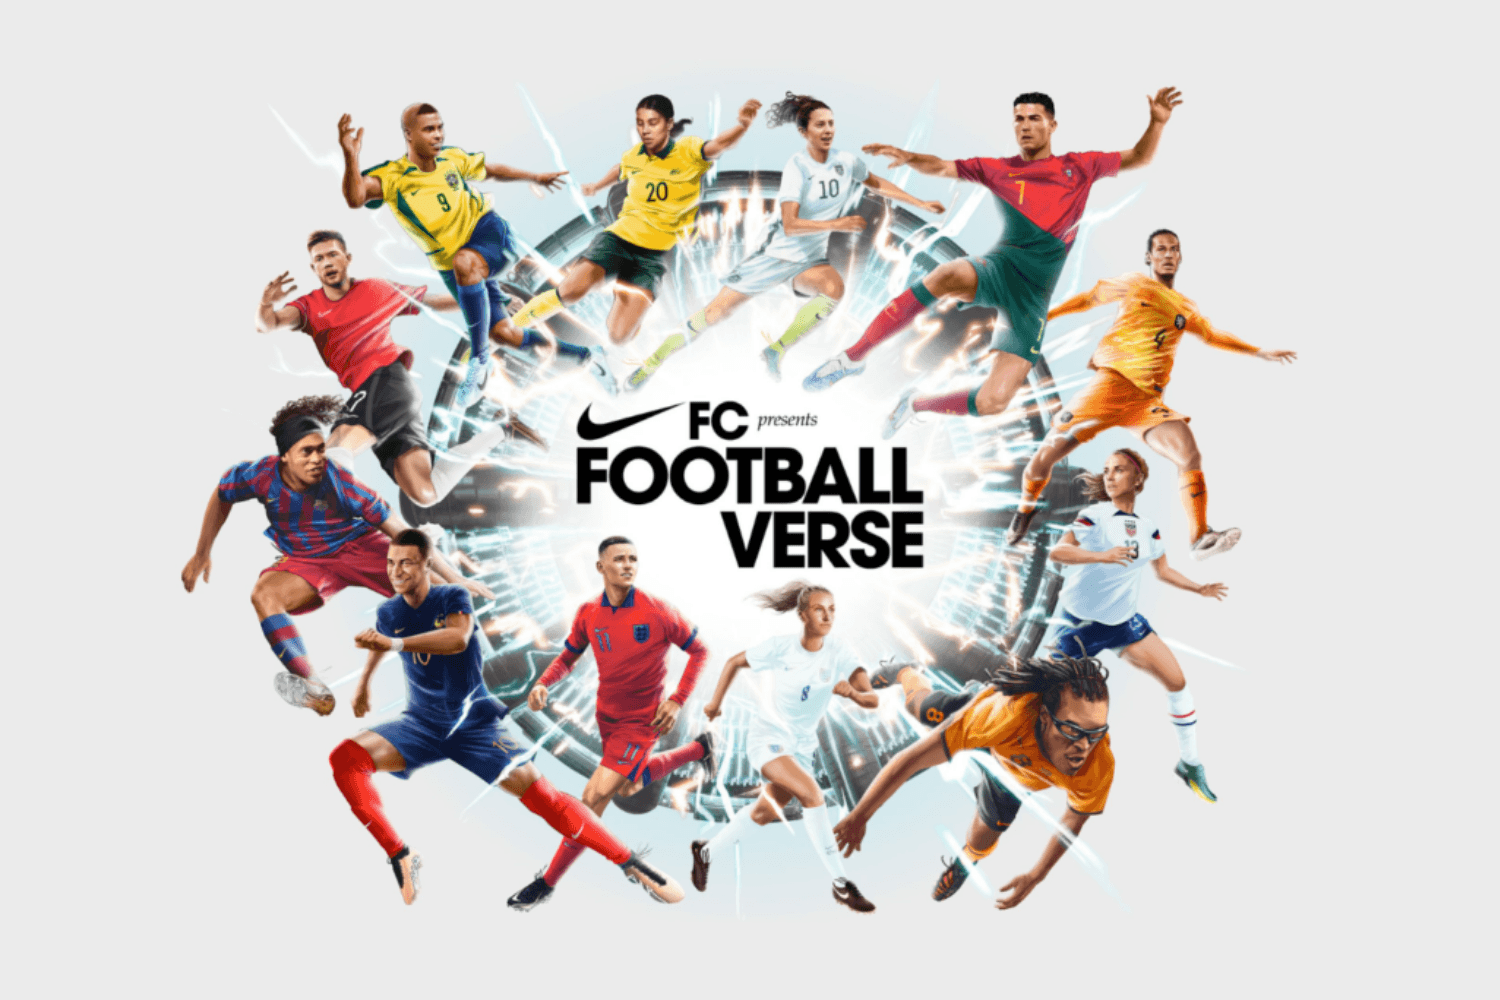 Der Nike FC präsentiert das 'Footballverse'